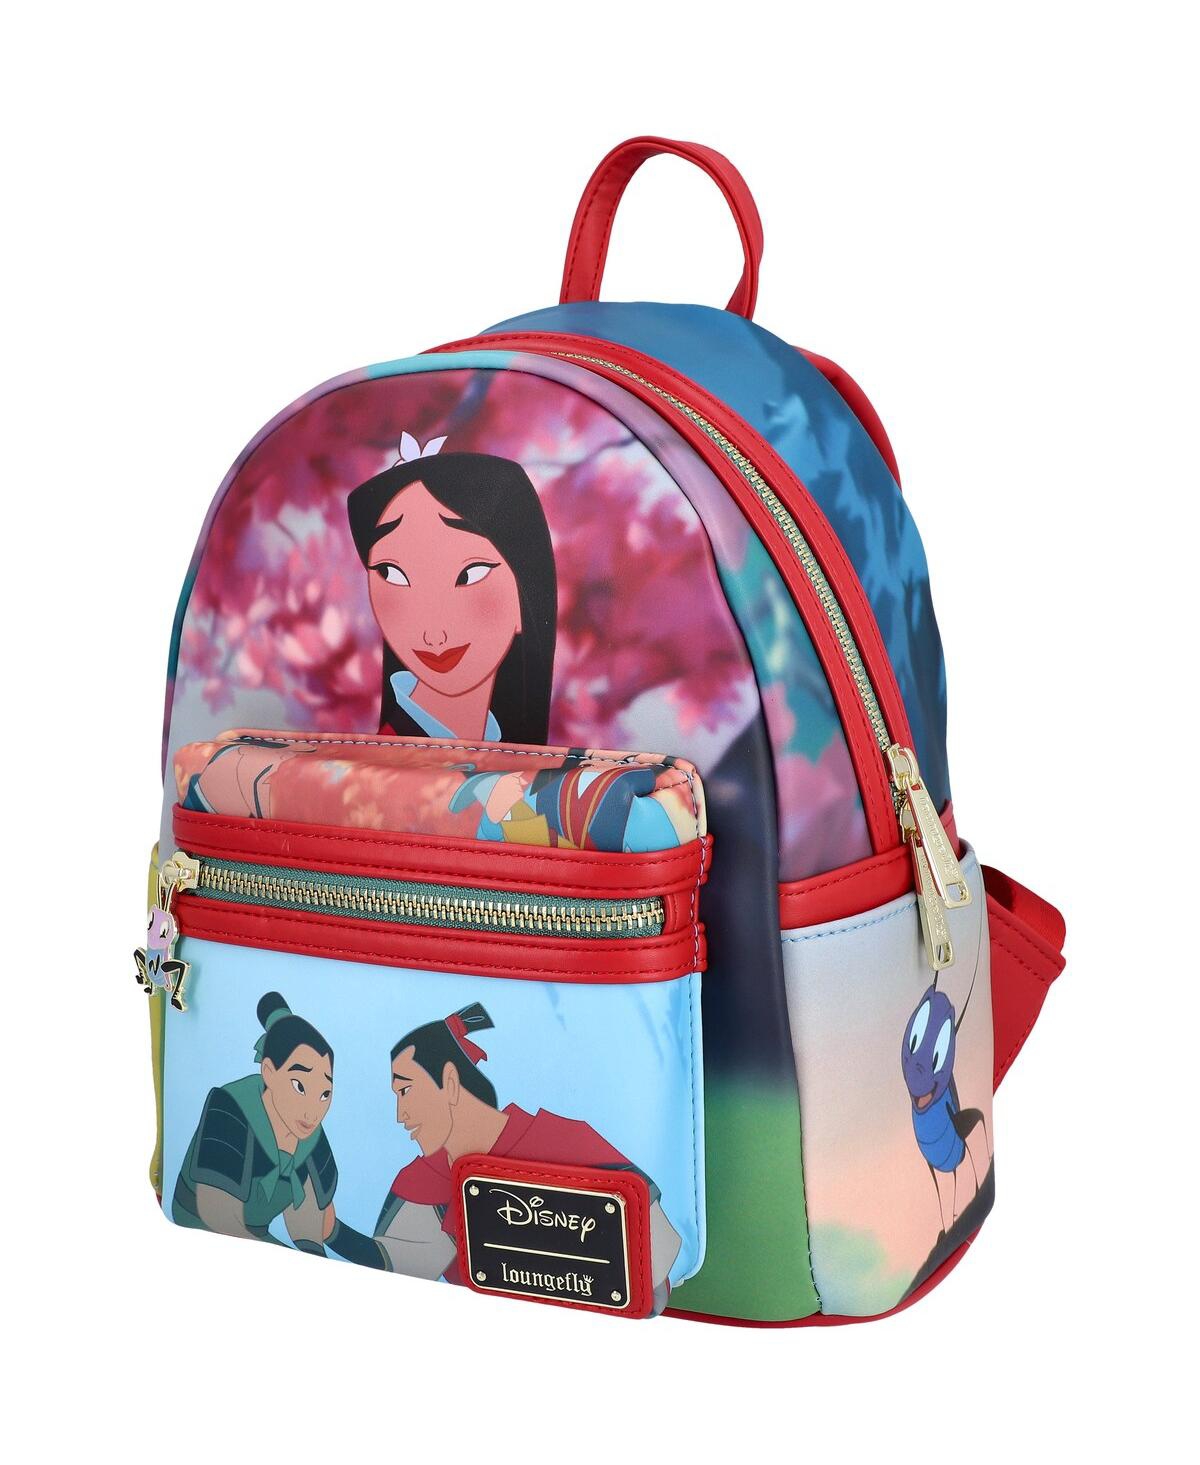 Mulan Princess Scene Mini Backpack - Red